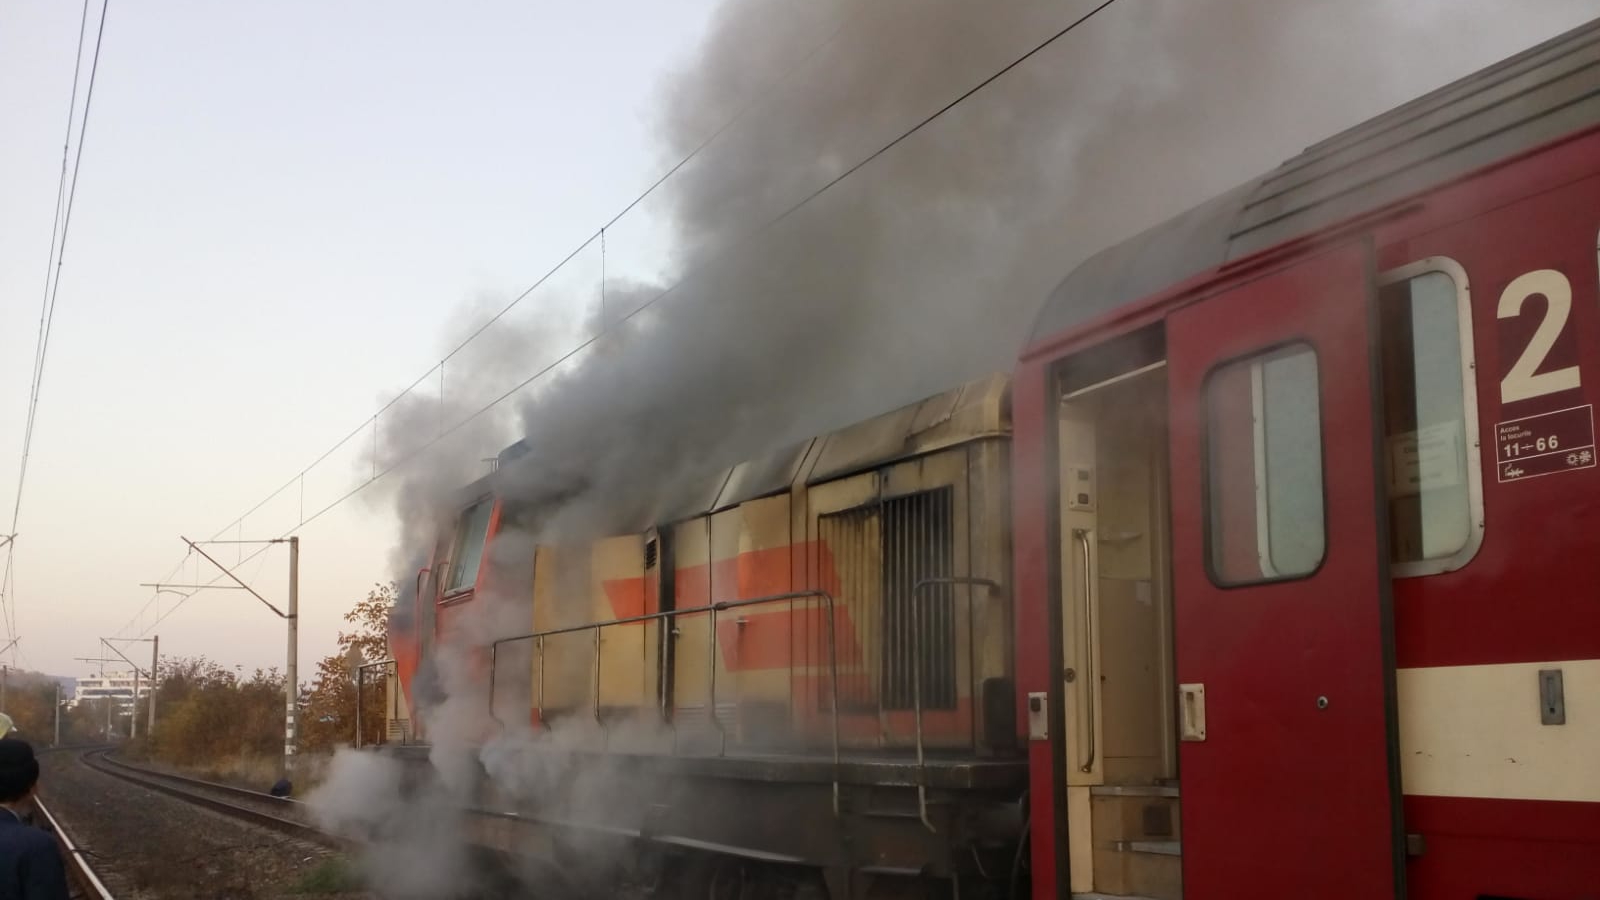 Panică într-un tren regio București – Ploiești. Locomotiva a luat foc în gară, intervin pompierii